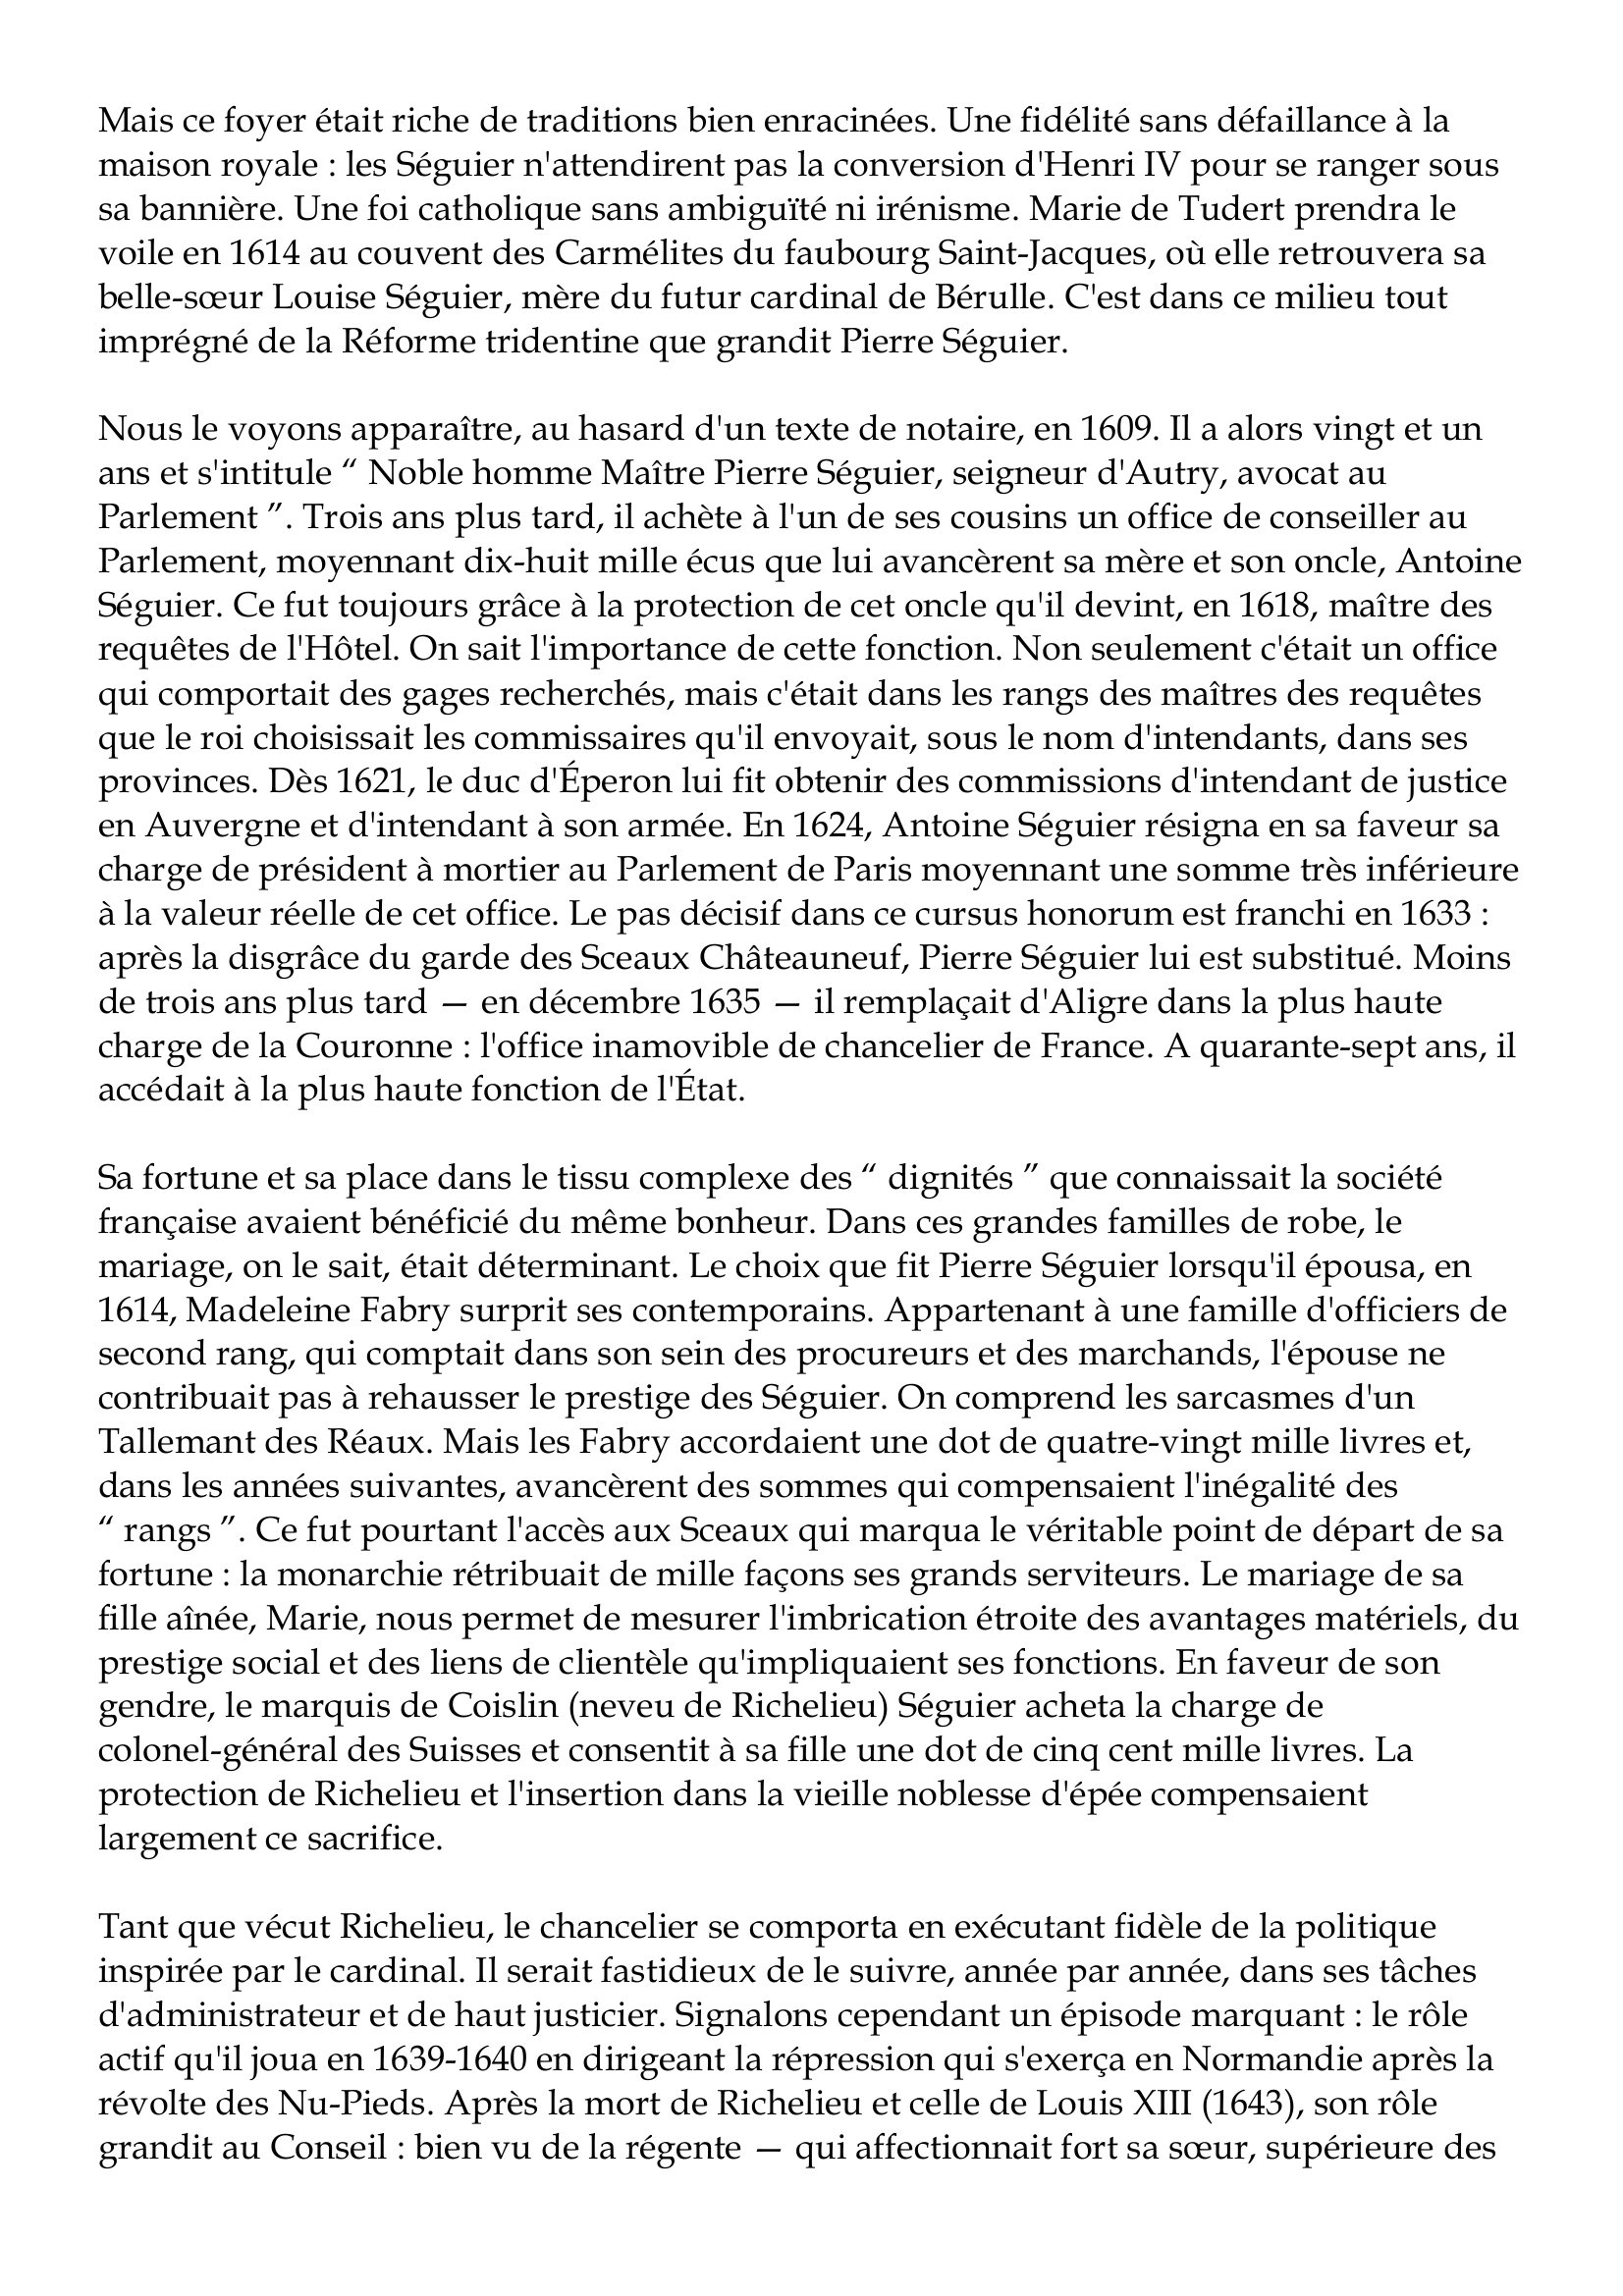 Prévisualisation du document Pierre Séguier
1588-1672
Parmi les grands commis qui durent à la monarchie française du XVIIe siècle l'illustration
de leur nom et l'éclat de leur fortune, Pierre Séguier n'apparaît pas, avec le recul du temps,
comme un homme de premier plan.